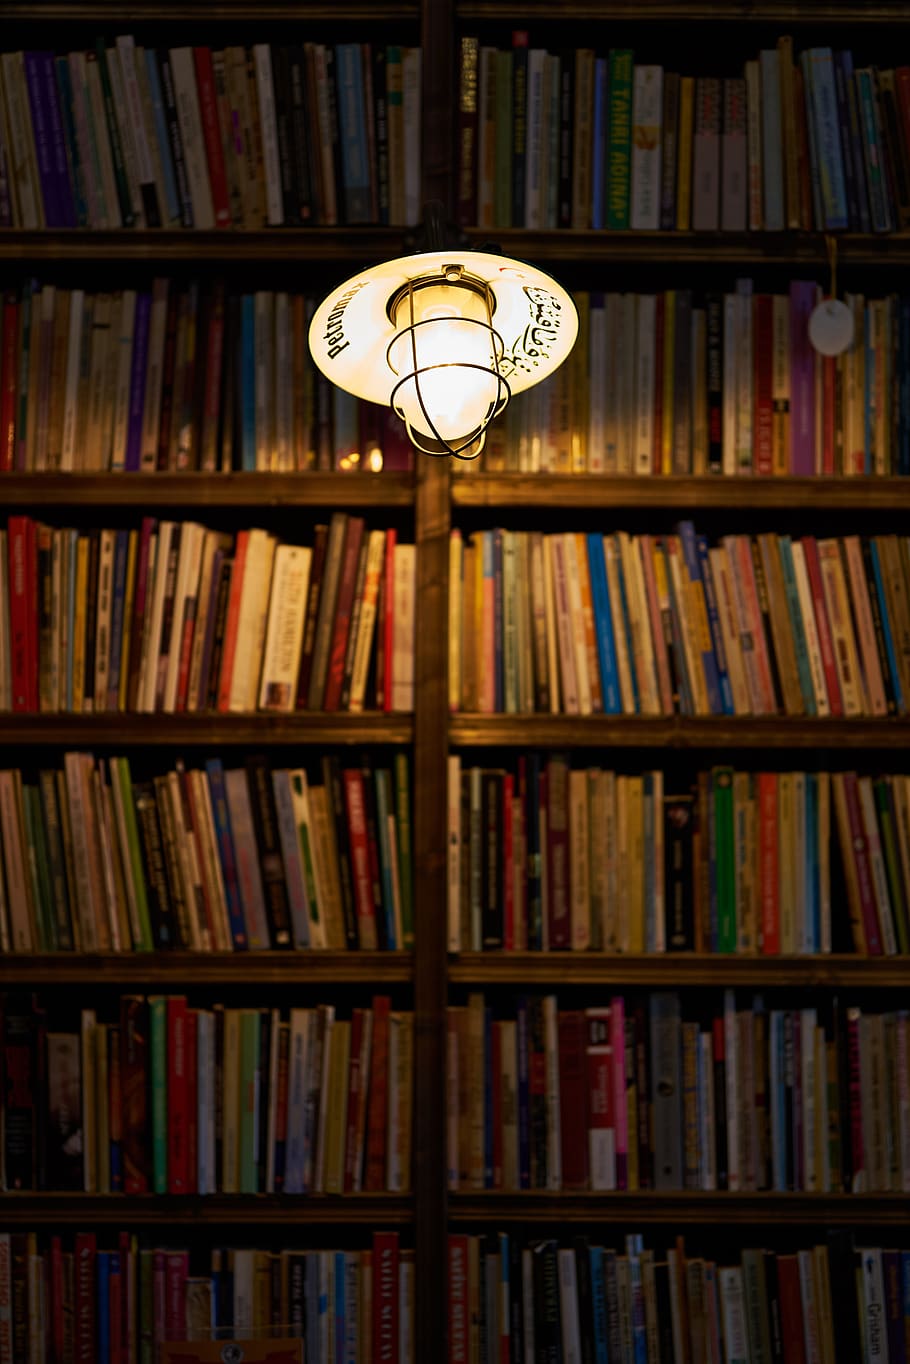 cahaya, buku, kafe, dekorasi, baca, romantis, sastra, pendidikan, penerangan, belajar